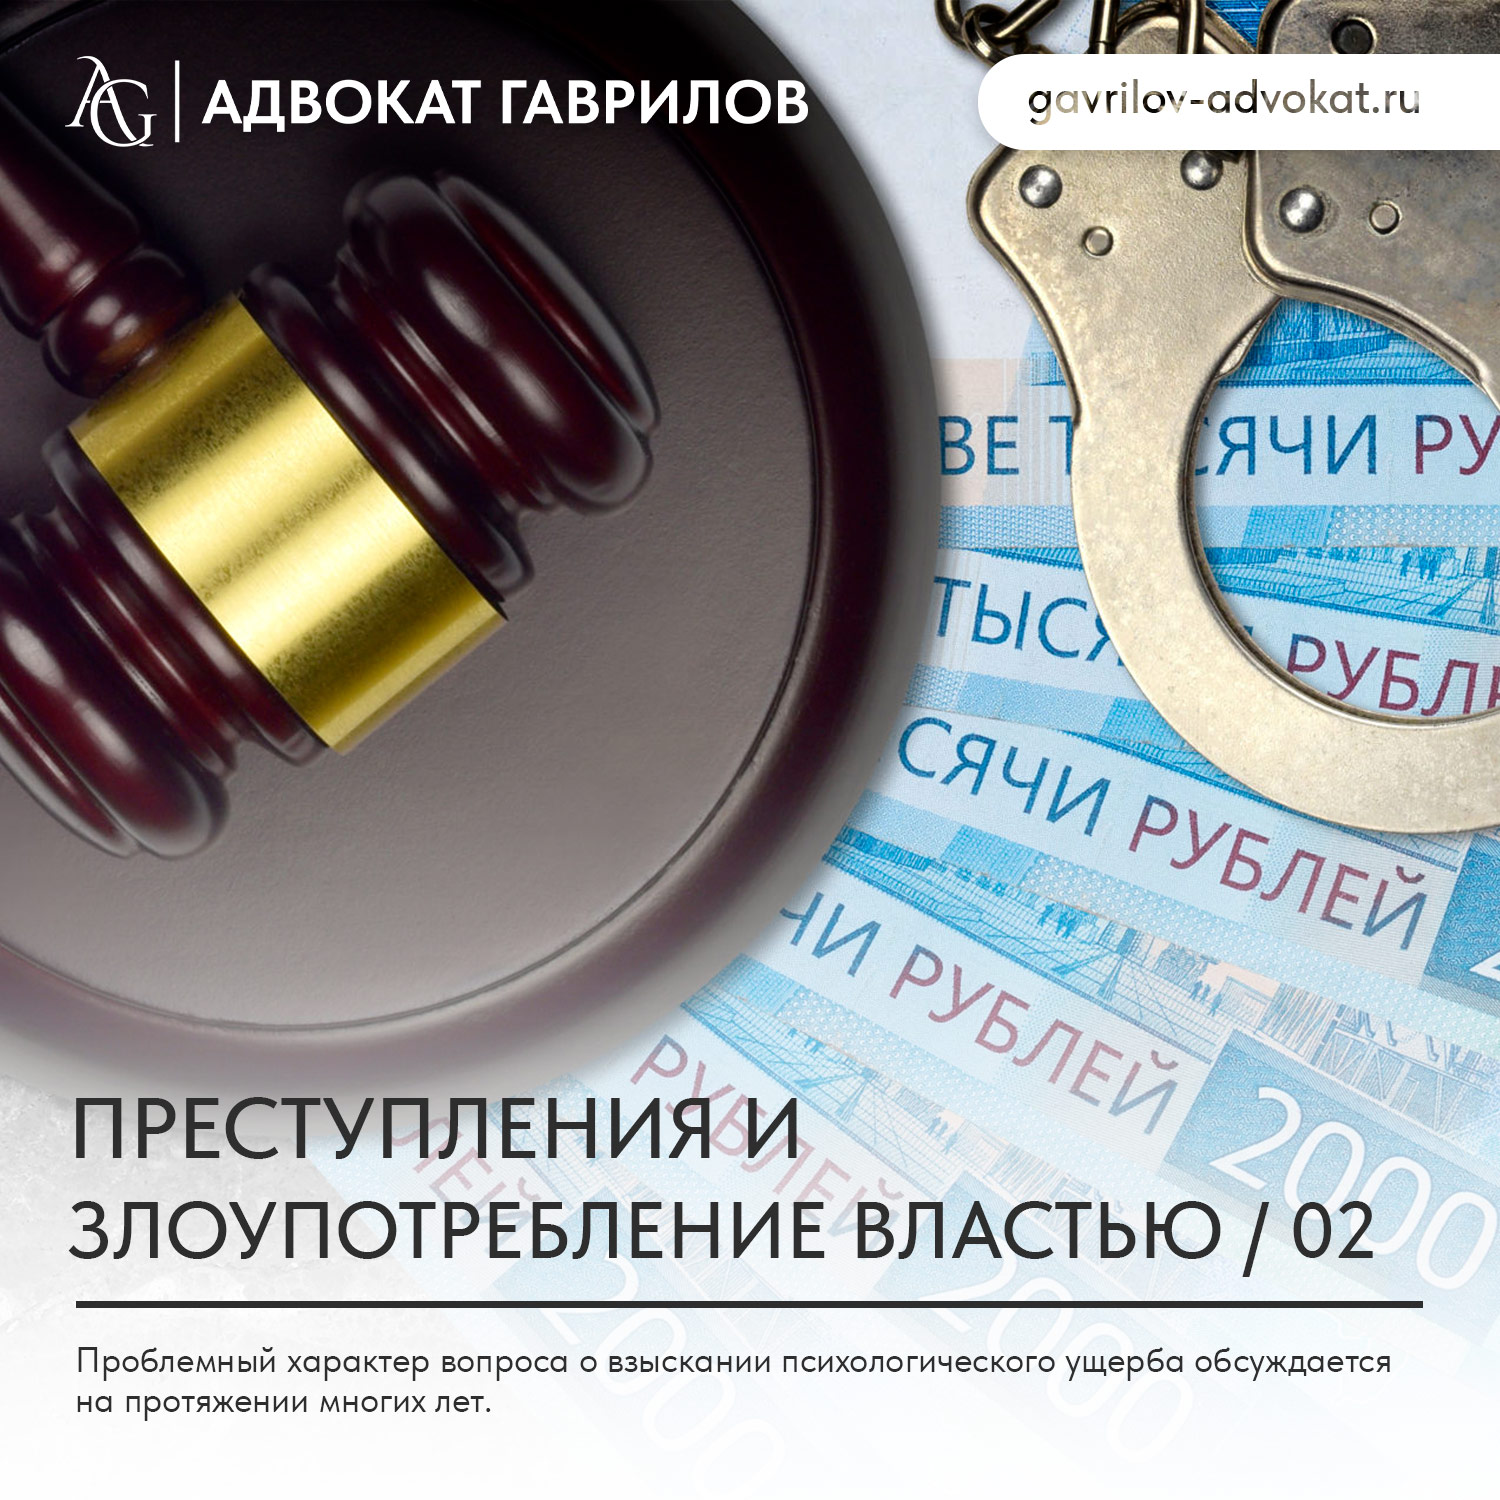 адвокат гаврилов москва юридические услуги консультация юрист юридическая помощь